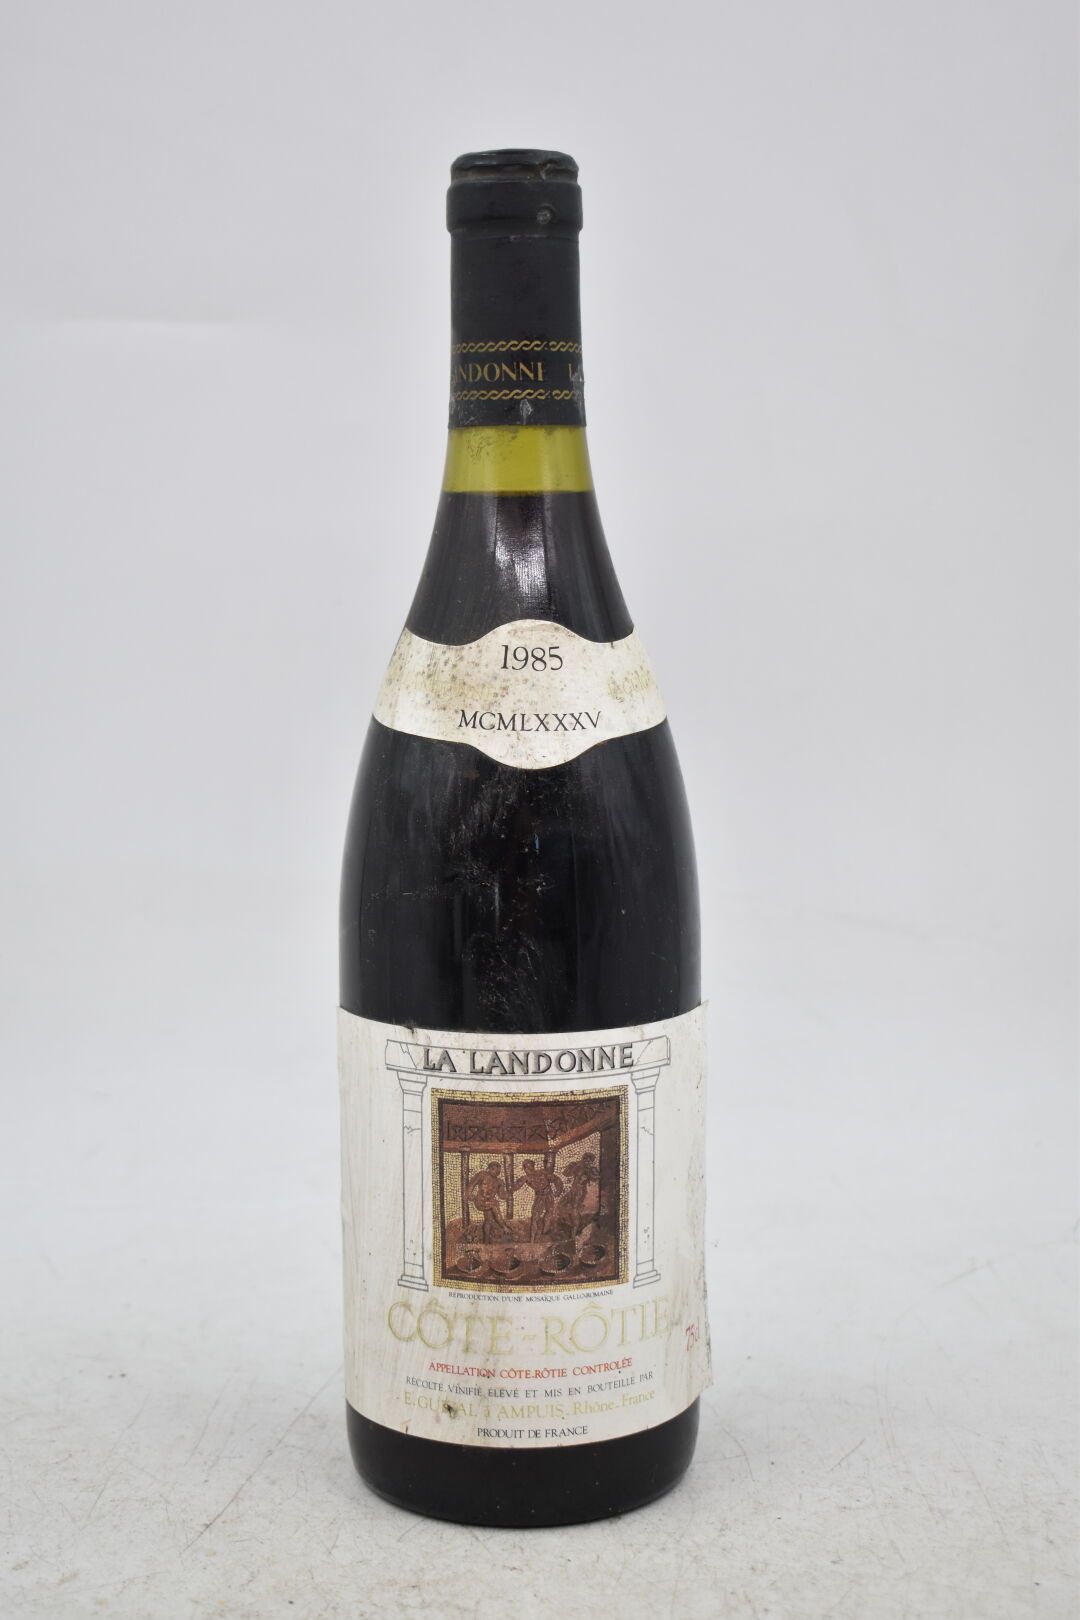 Null CÔTE-RÔTIE
La Landonne
1985
E. Guigal (Ampuis)
1 bouteille

Niveau : 1,3 cm&hellip;